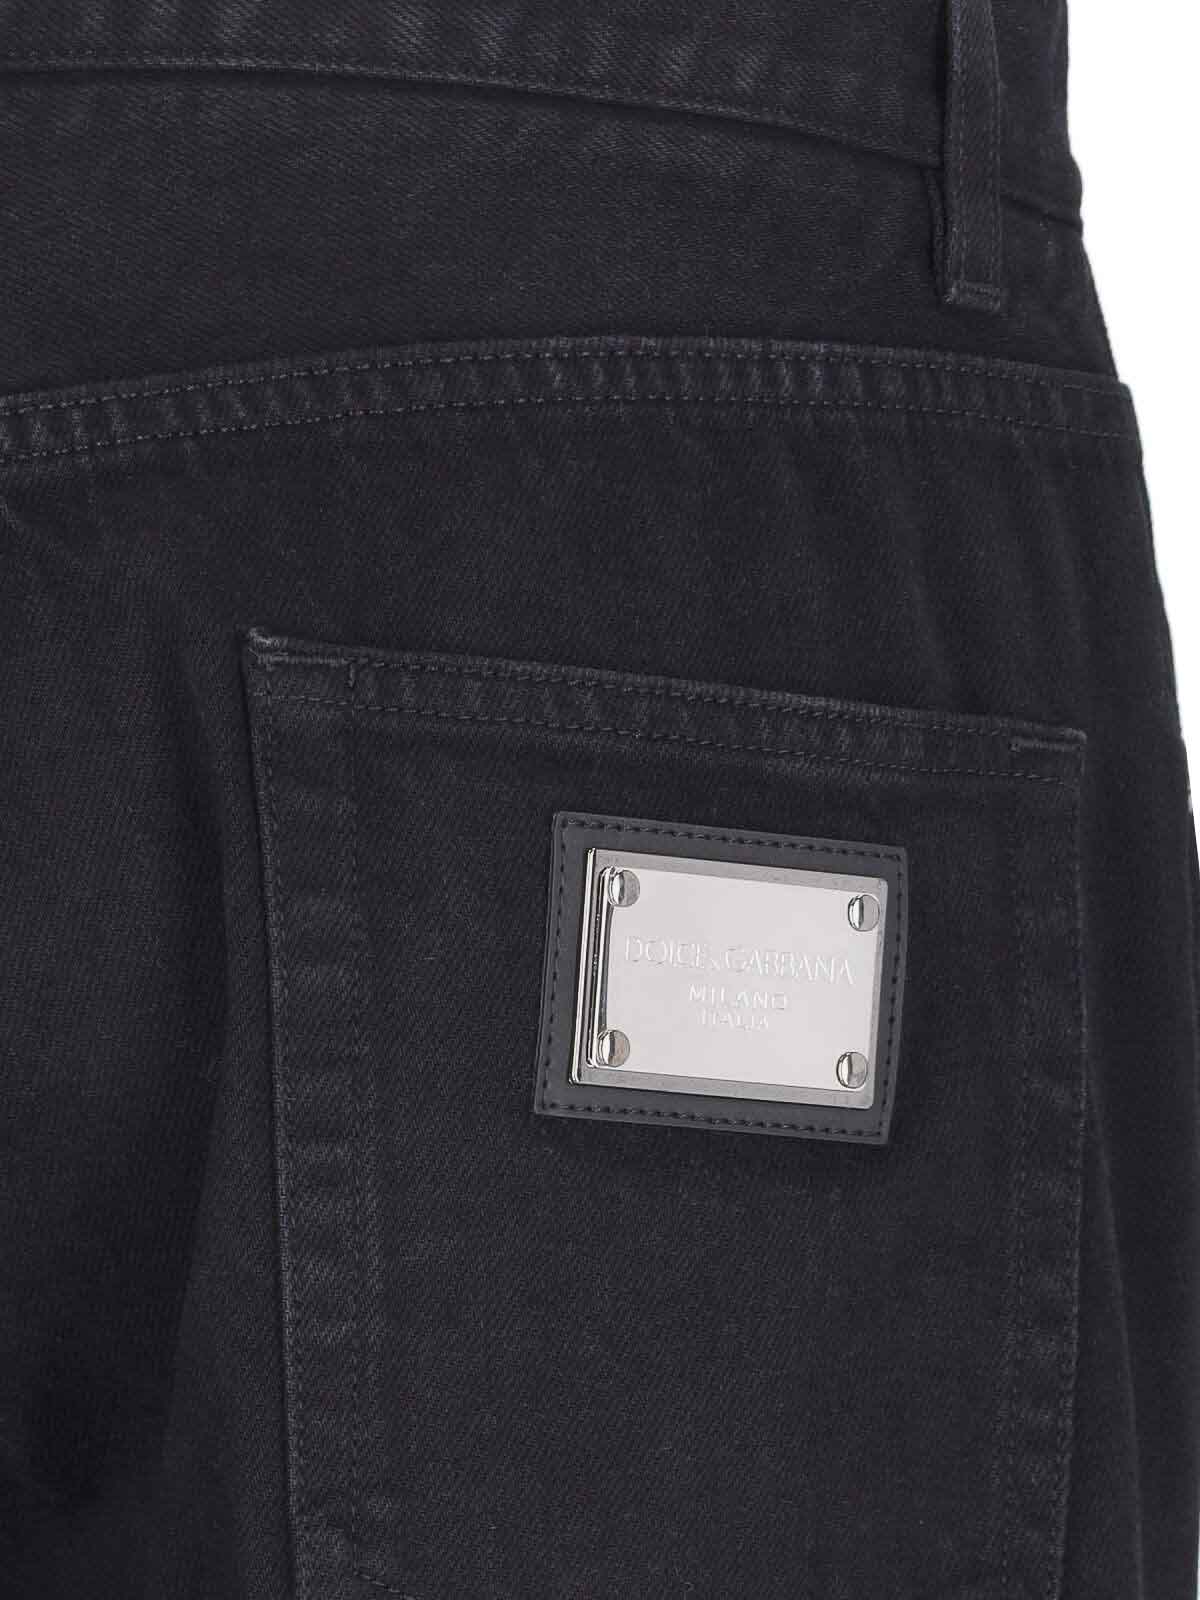 Shop Dolce & Gabbana Jeans Dritti In Black